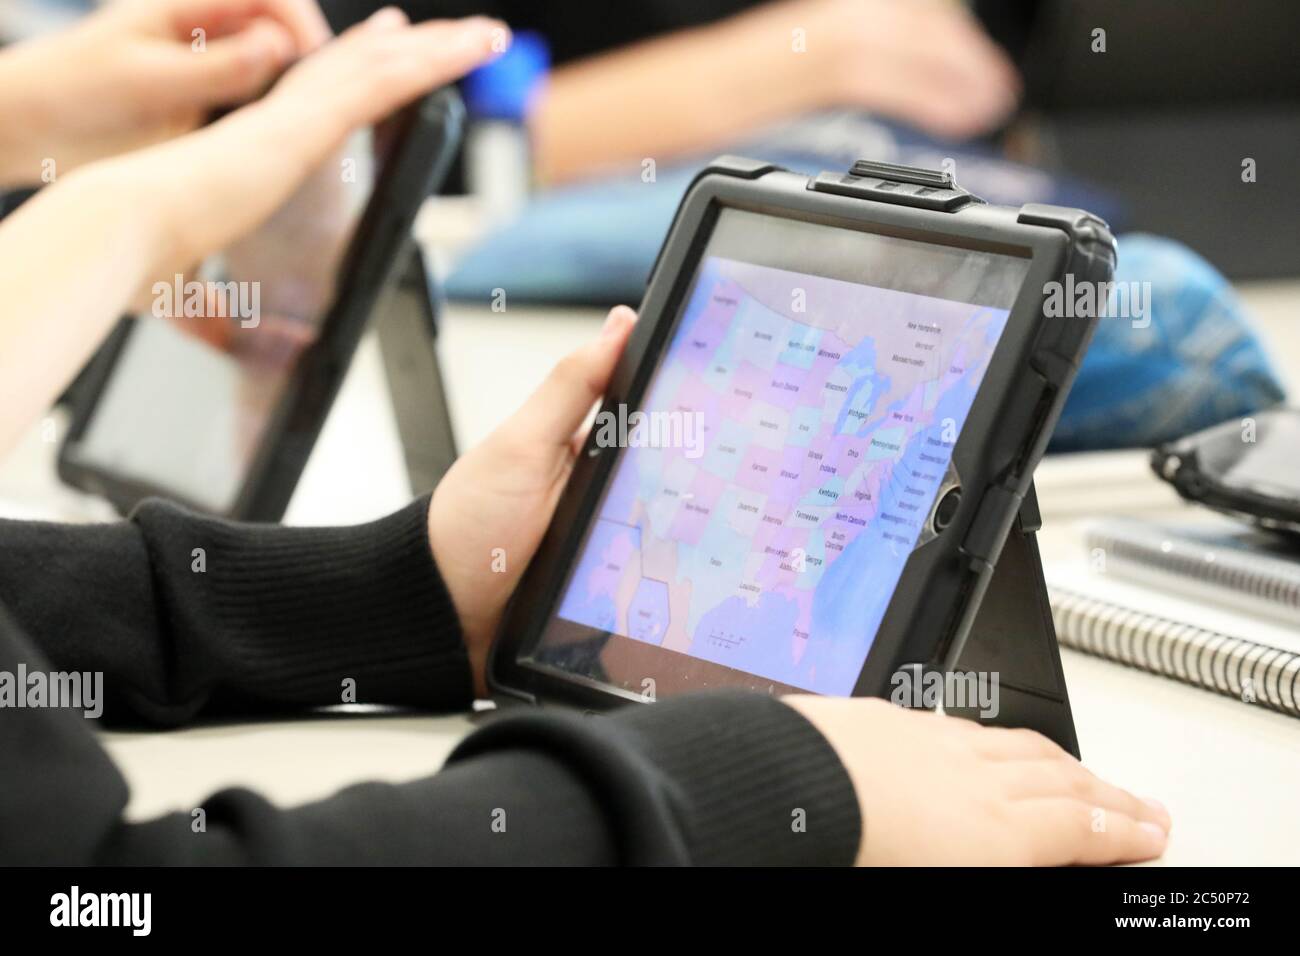 L'étudiant moderne dans la classe utilisant un appareil numérique ou une tablette pour travailler ou faire des recherches avec. Thème géographique, politique avec ma coloré Banque D'Images